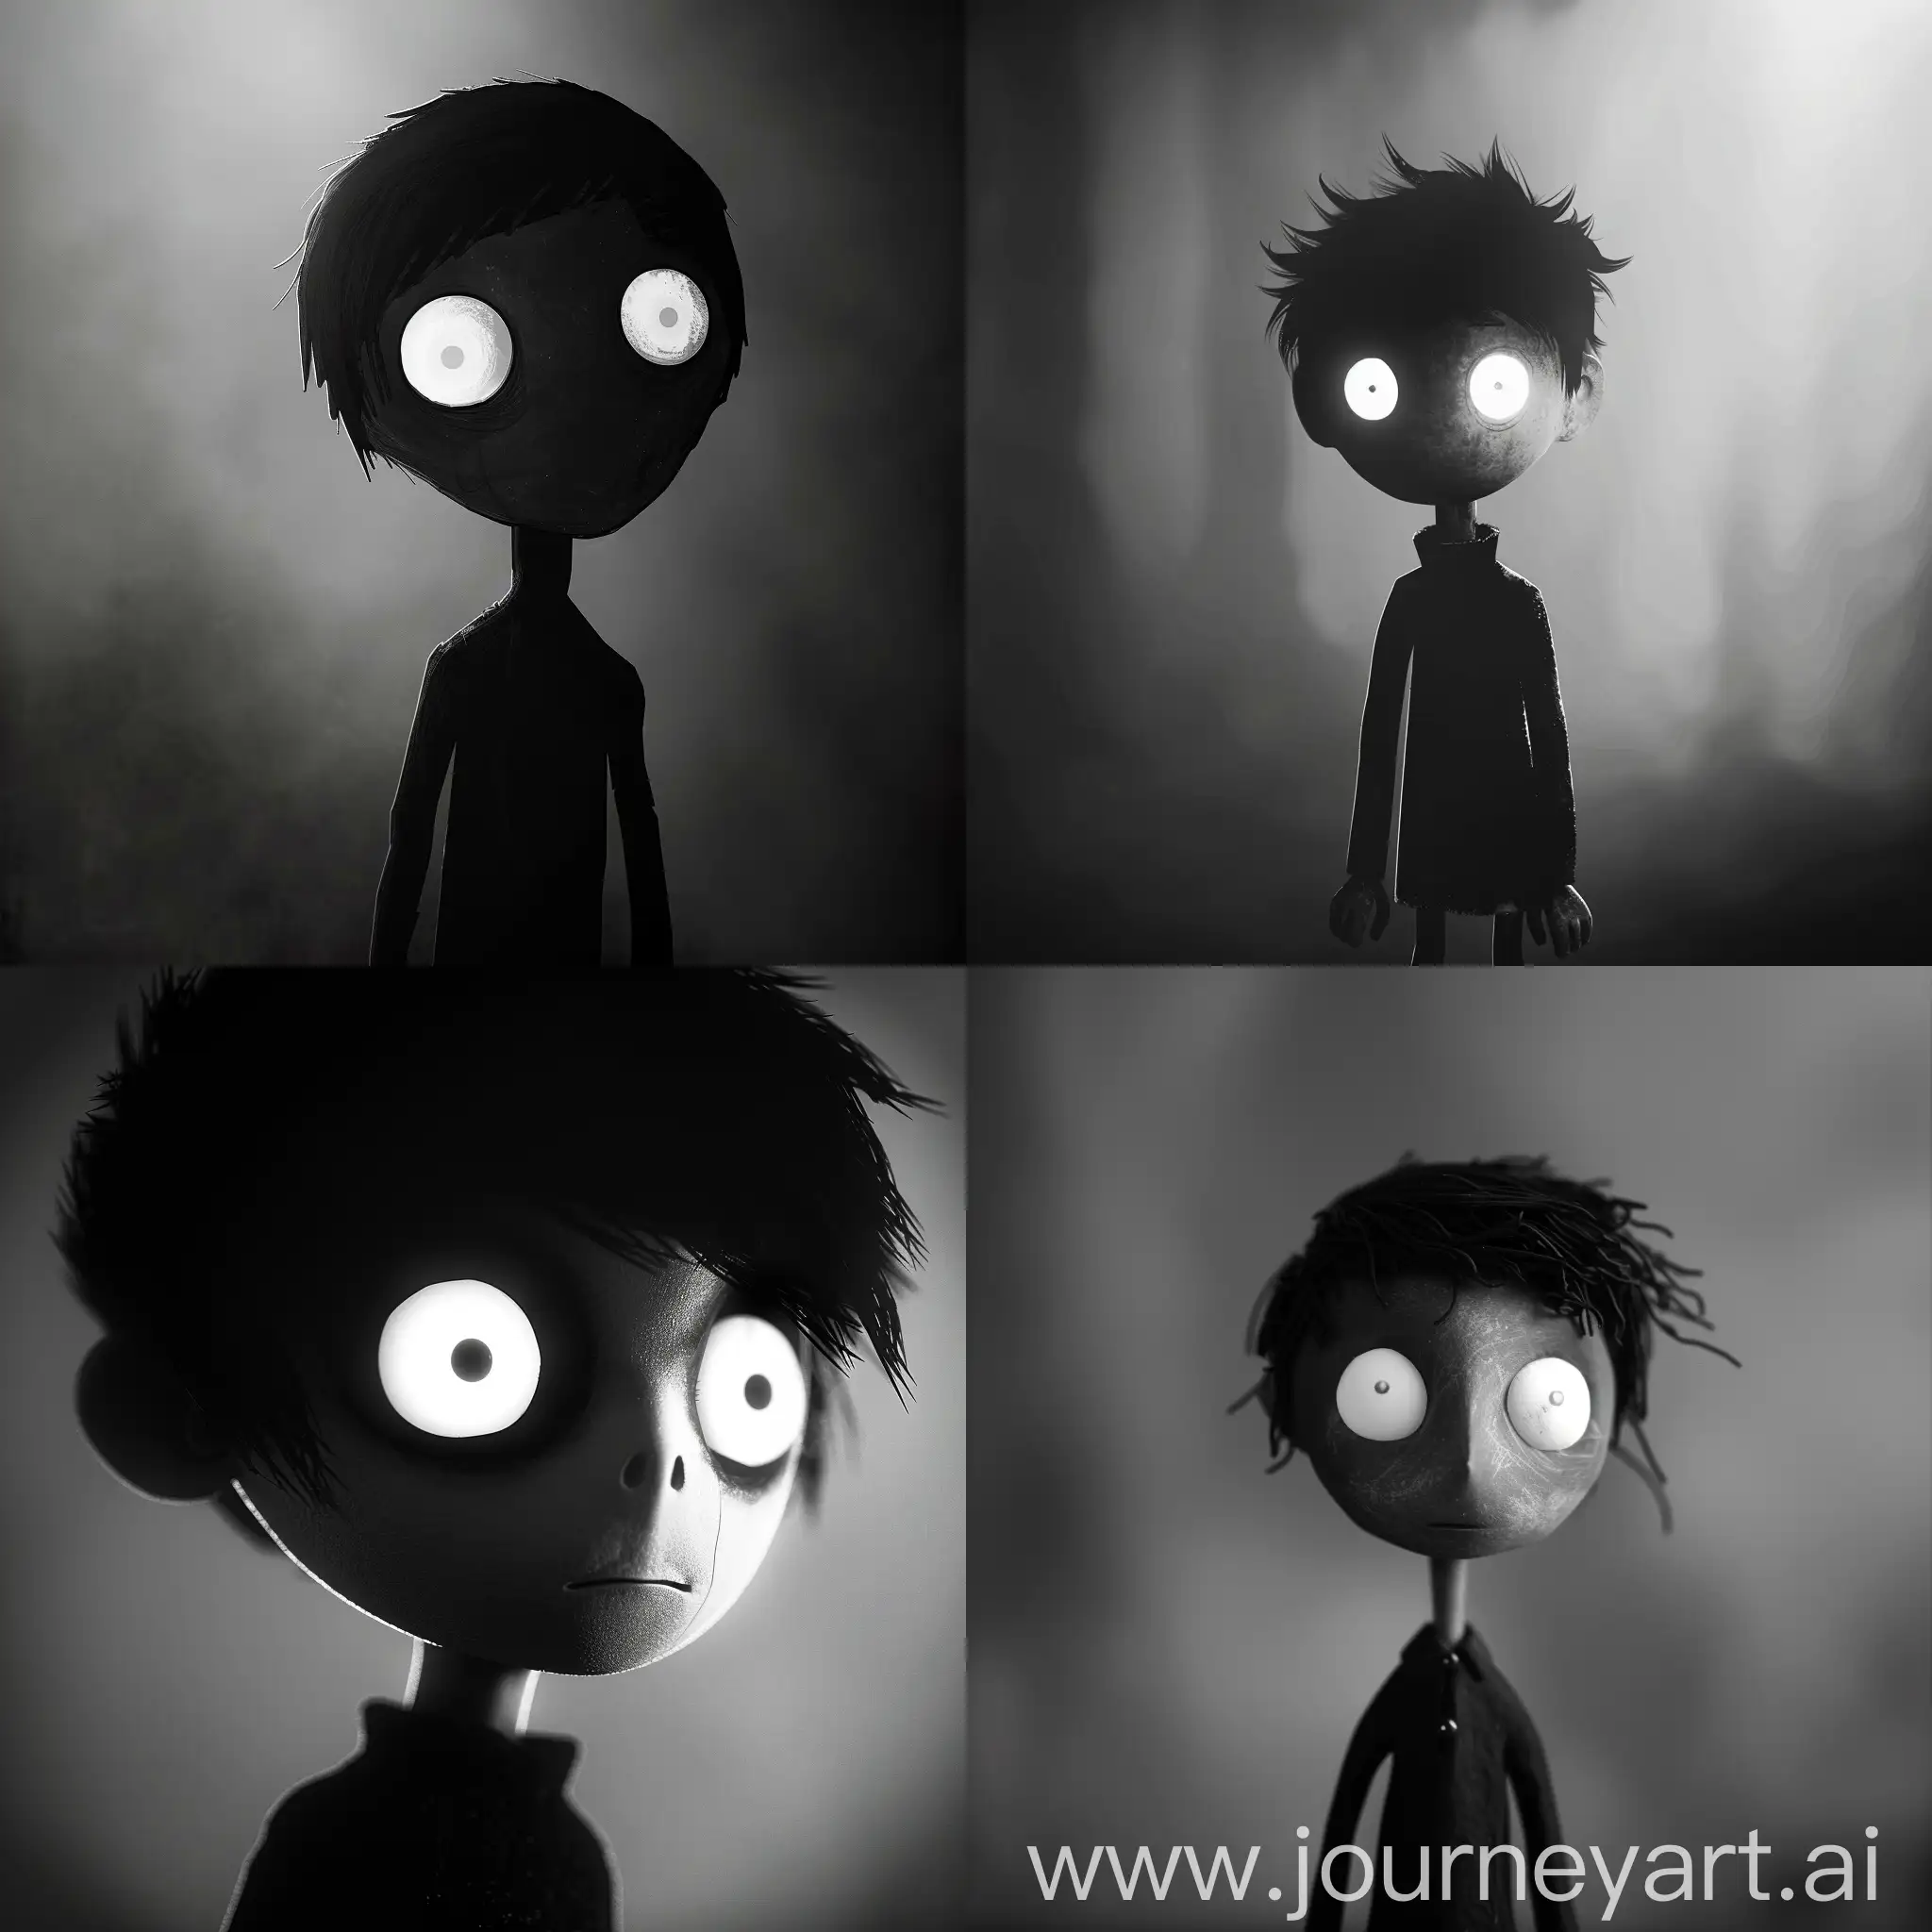 черно-белый, маленький по размеру мальчик, с белыми глазами, похожий на главного персонажа игры Limbo